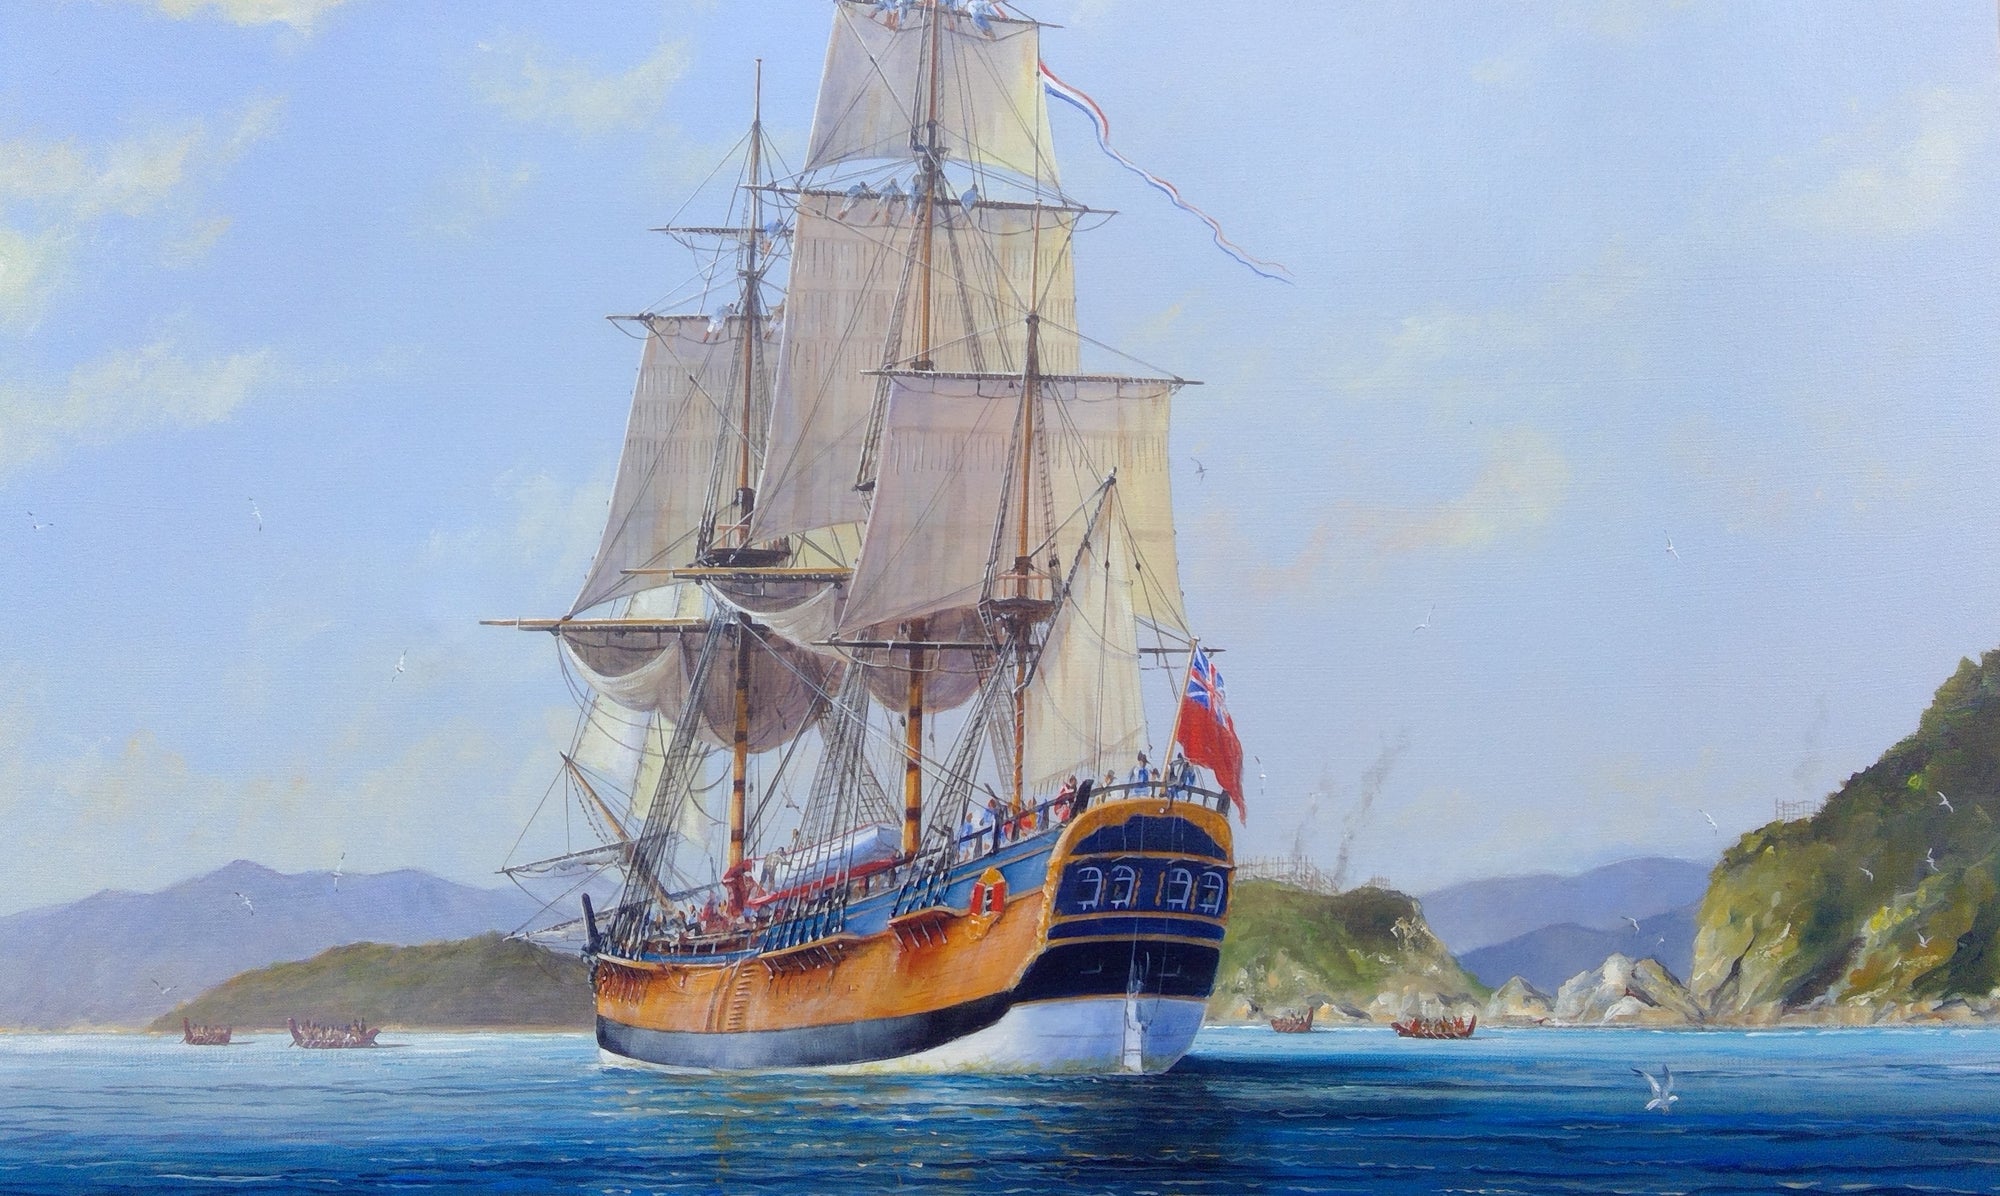 HMS Endeavour - 1770